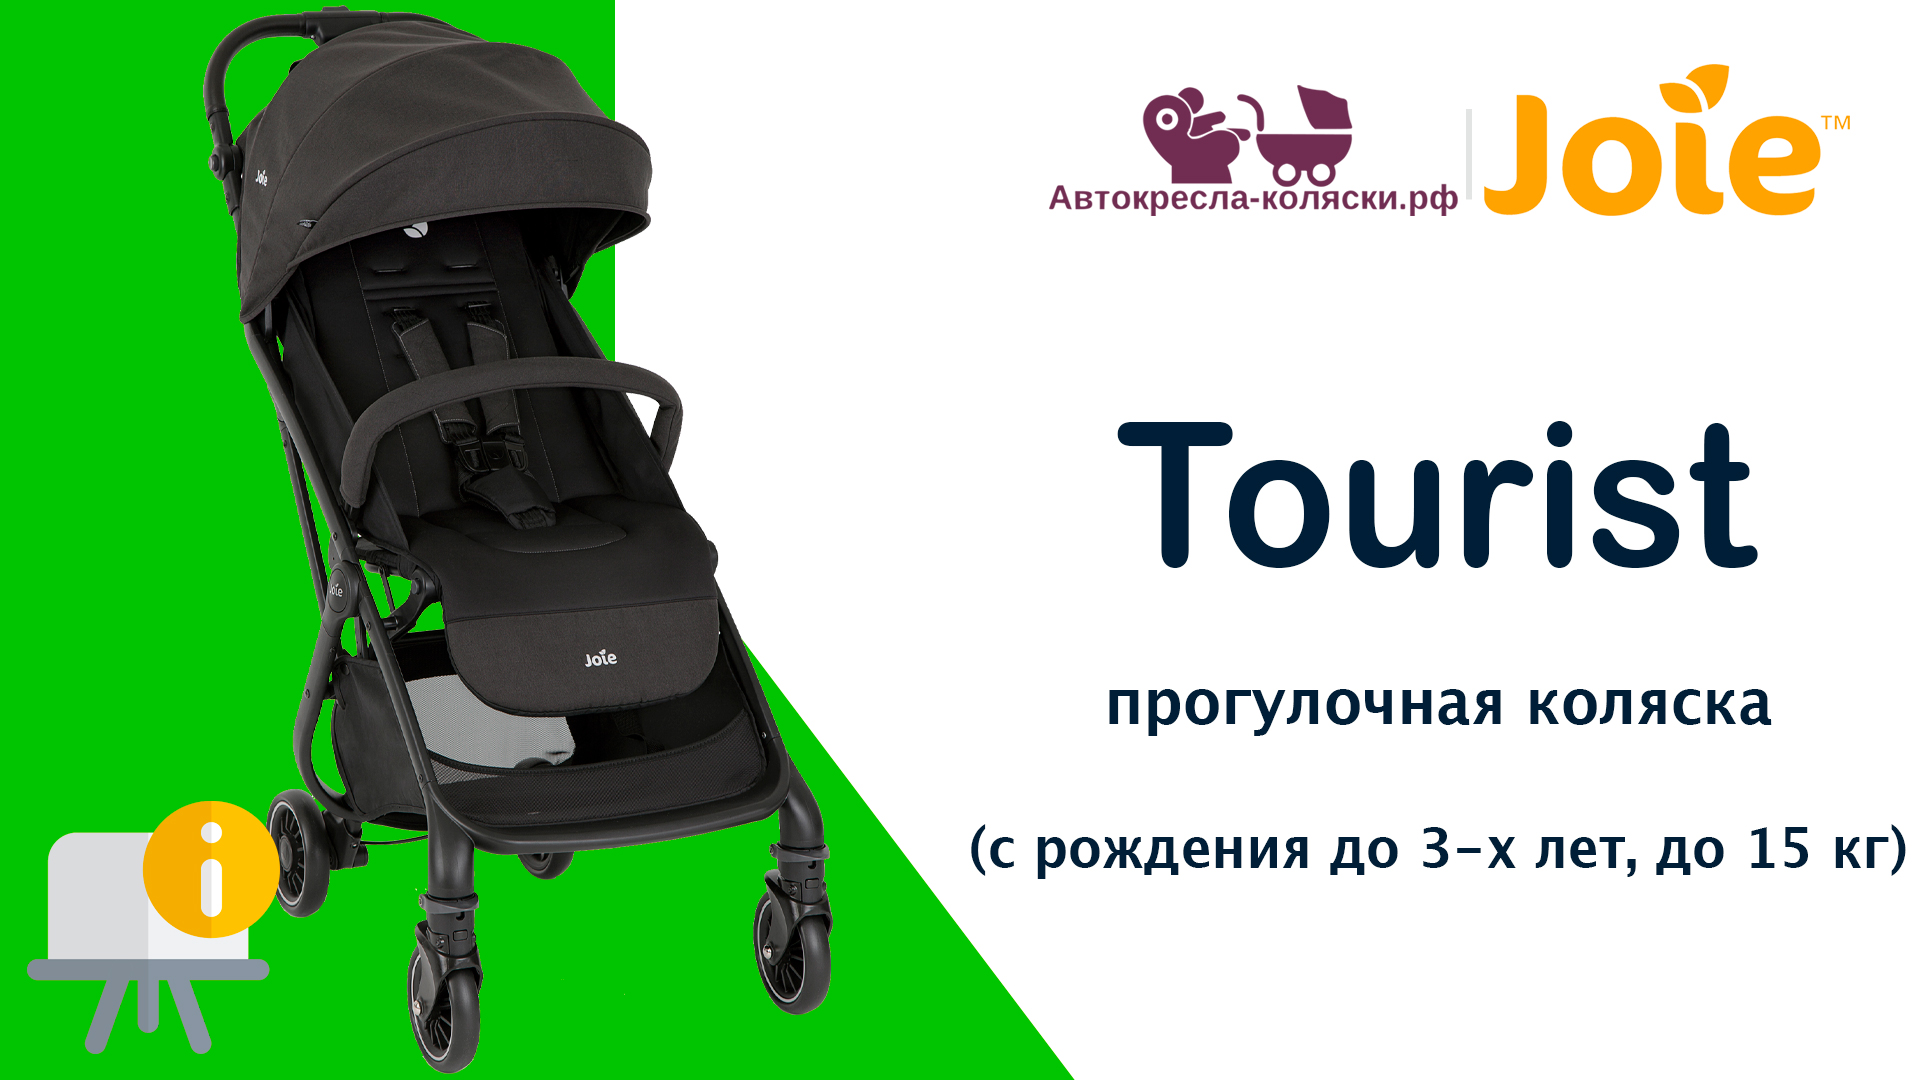 Joie Tourist™  |  ОБЗОР легкой прогулочной коляски для путешествий с рождения до 3-х лет (до 15 кг).